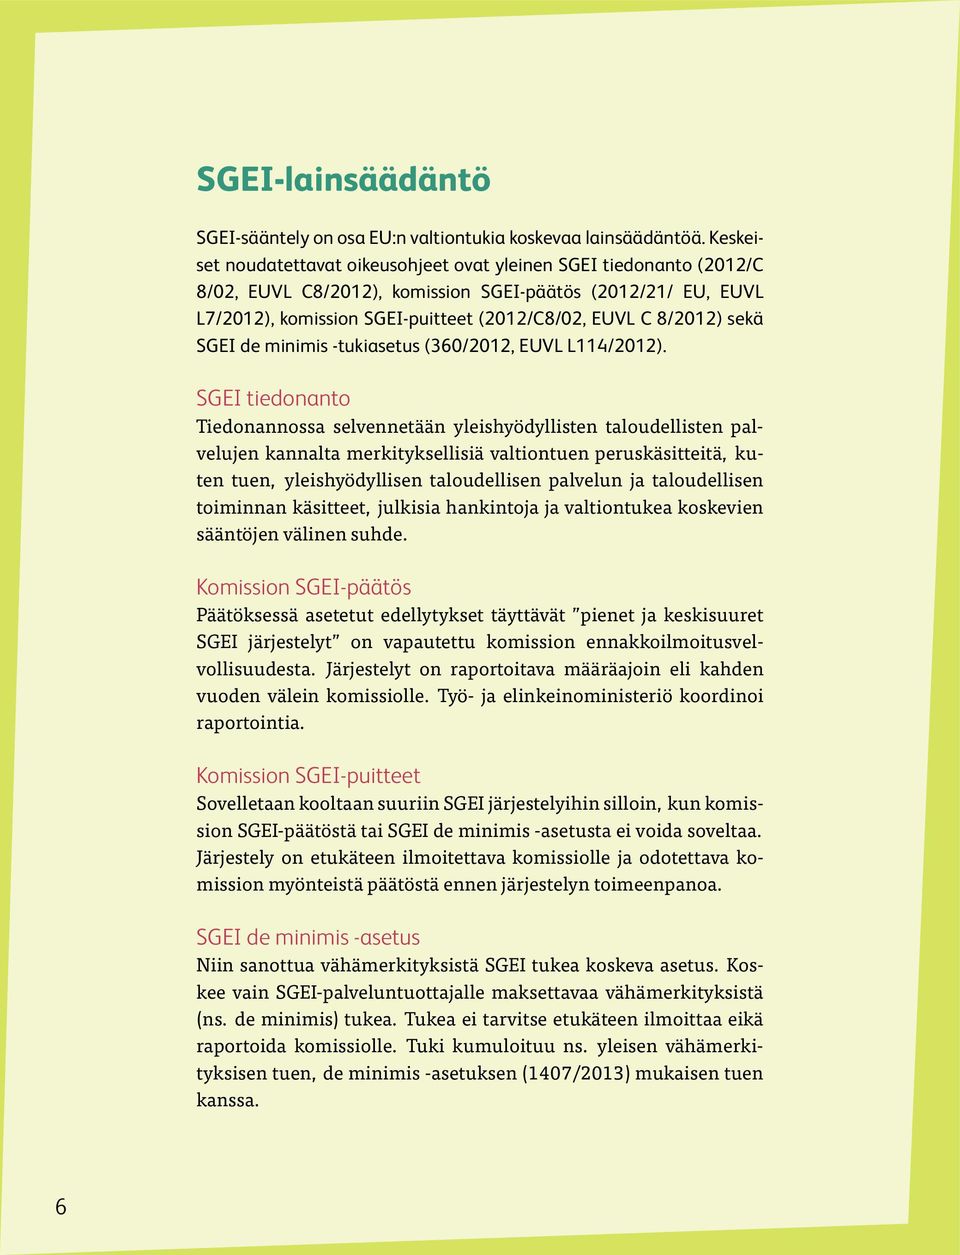 sekä SGEI de minimis -tukiasetus (360/2012, EUVL L114/2012).